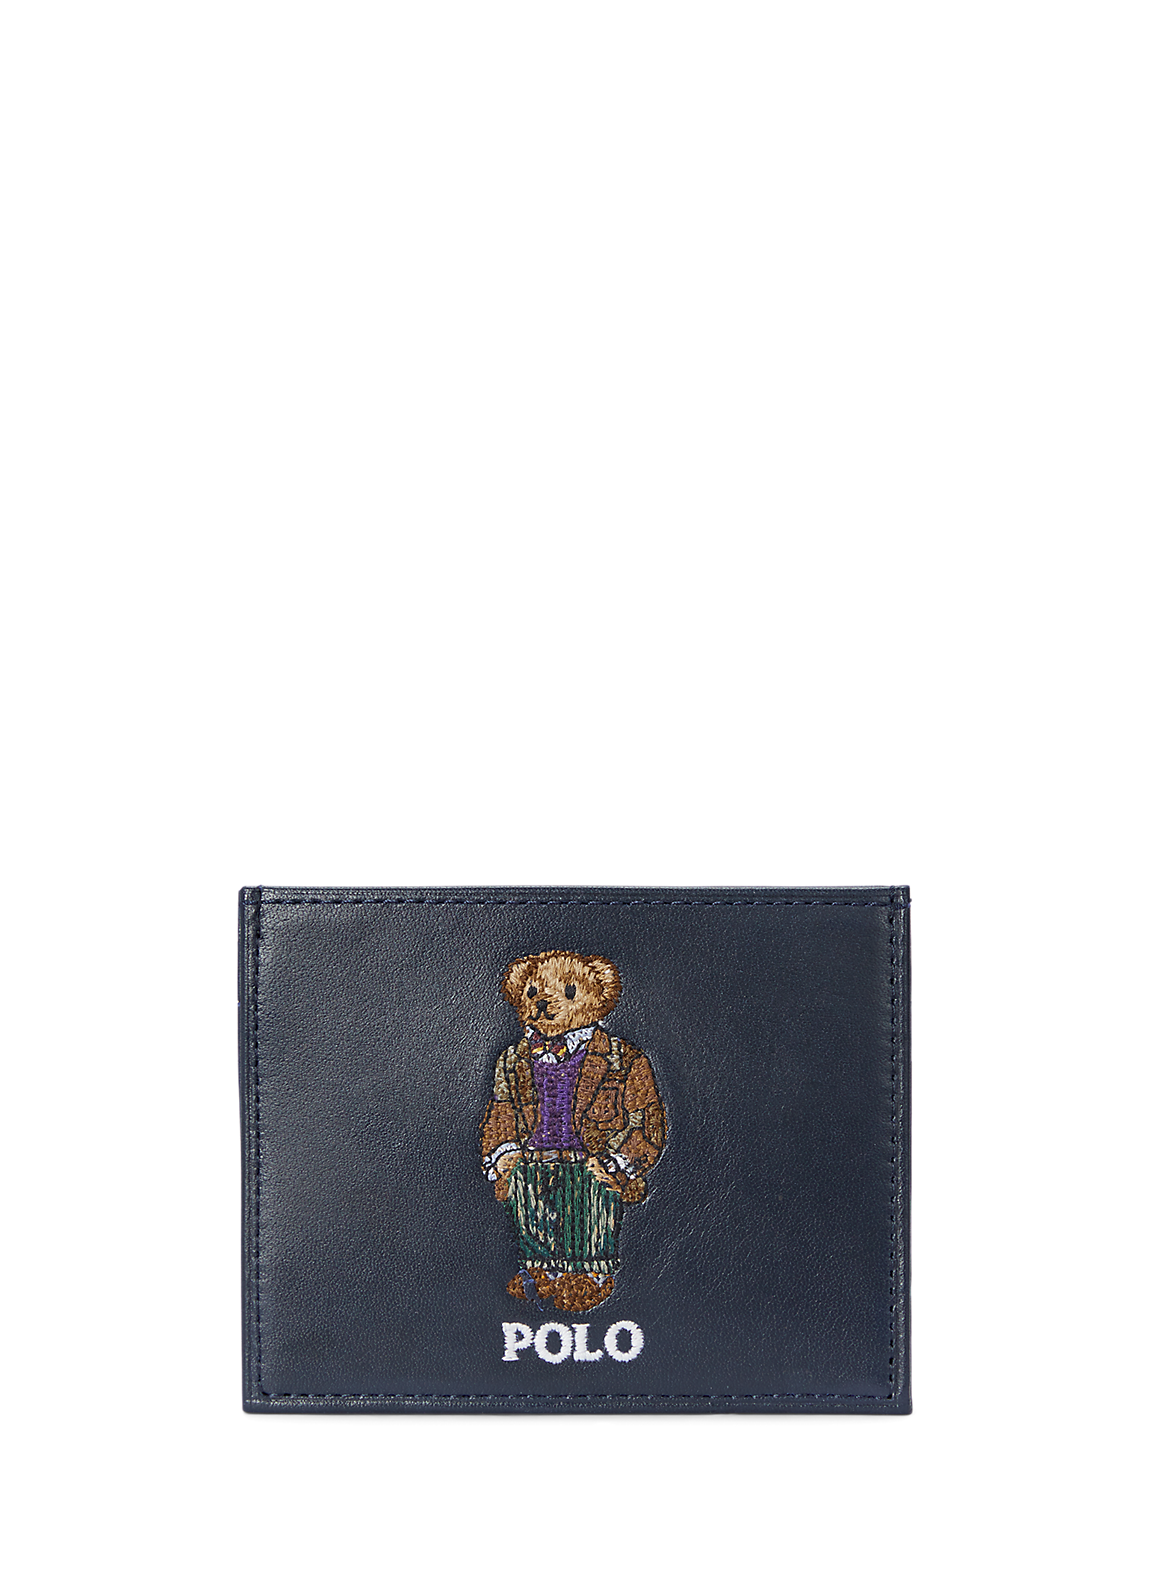 POLO RALPH LAUREN（ポロ ラルフ ローレン）】Polo ベア レザー カード 